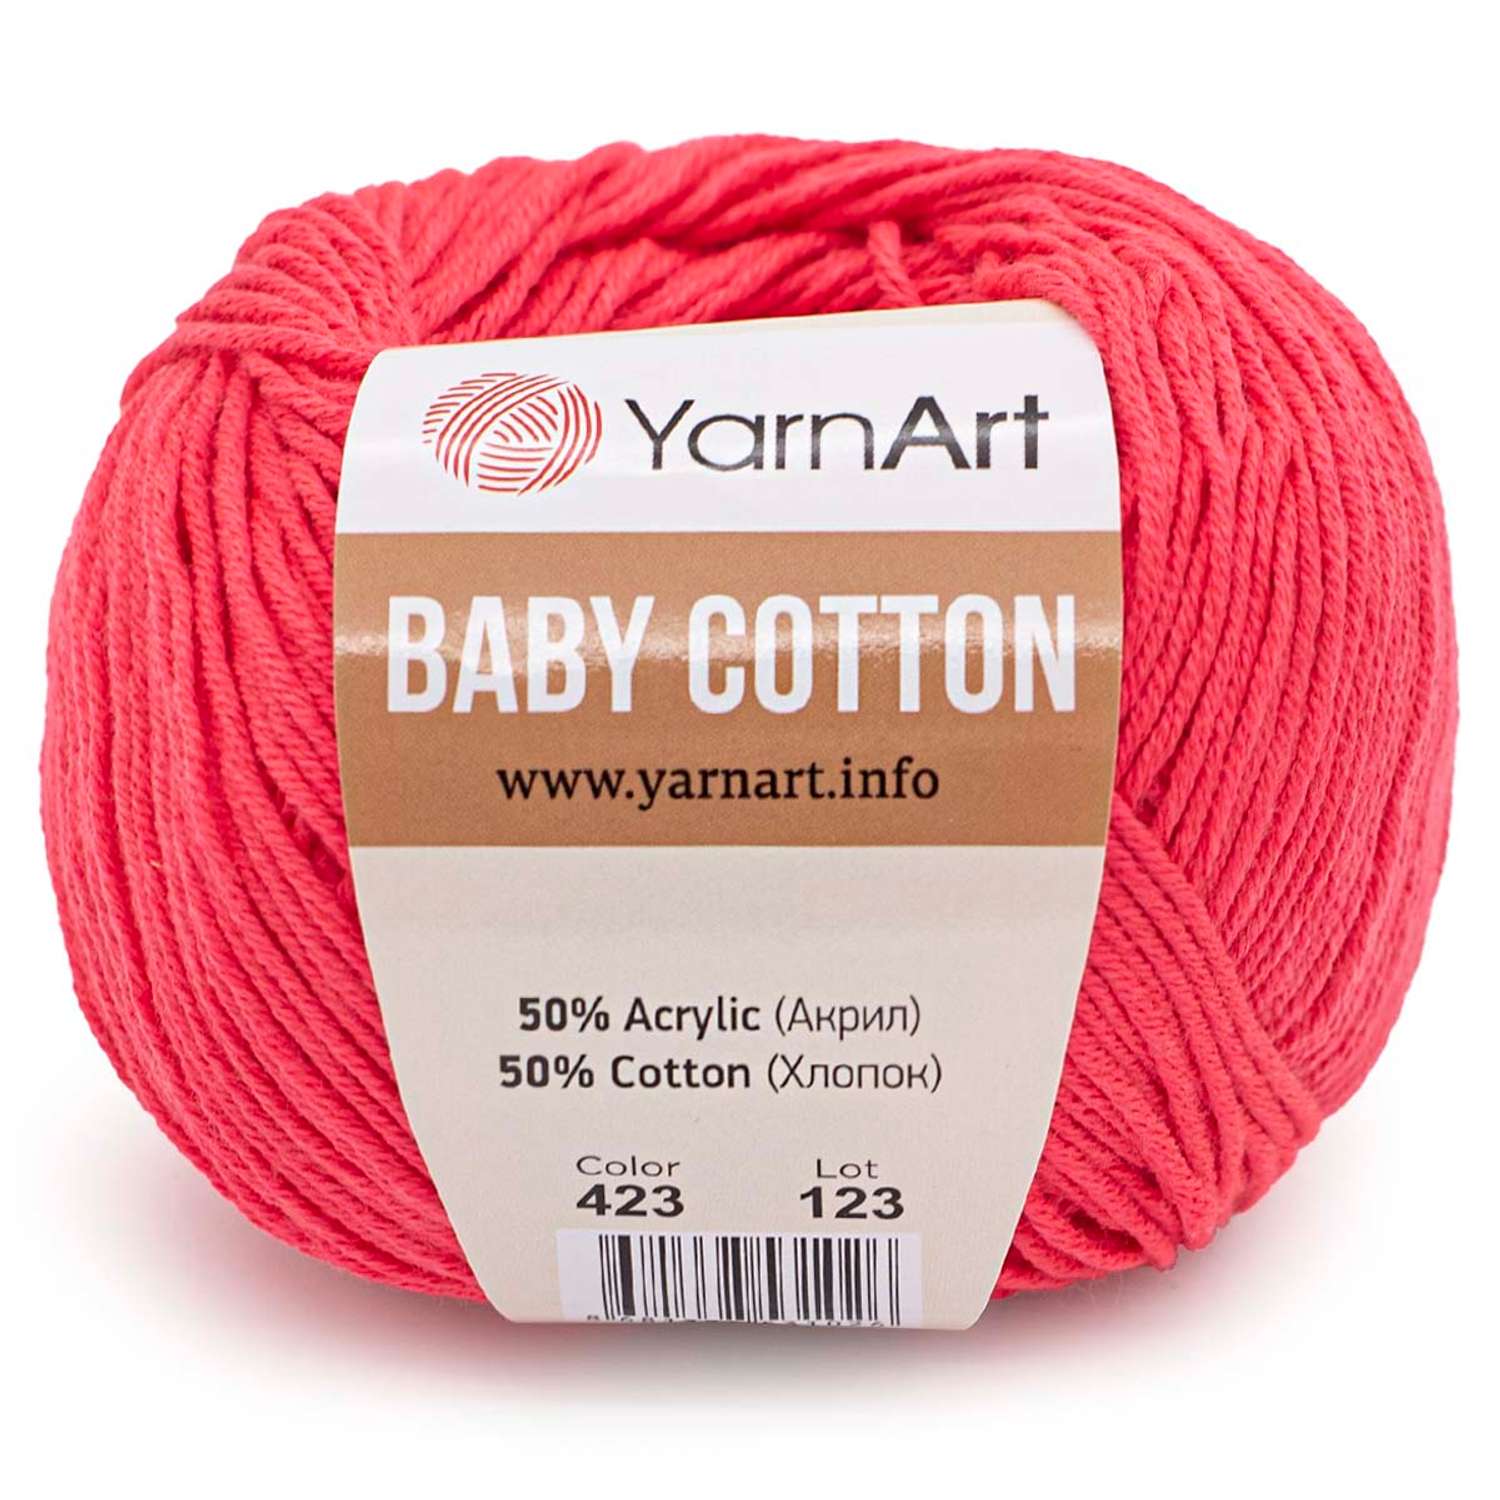 Пряжа для вязания YarnArt Baby Cotton 50гр 165 м хлопок акрил детская 10 мотков 423 ярко-розовый - фото 6